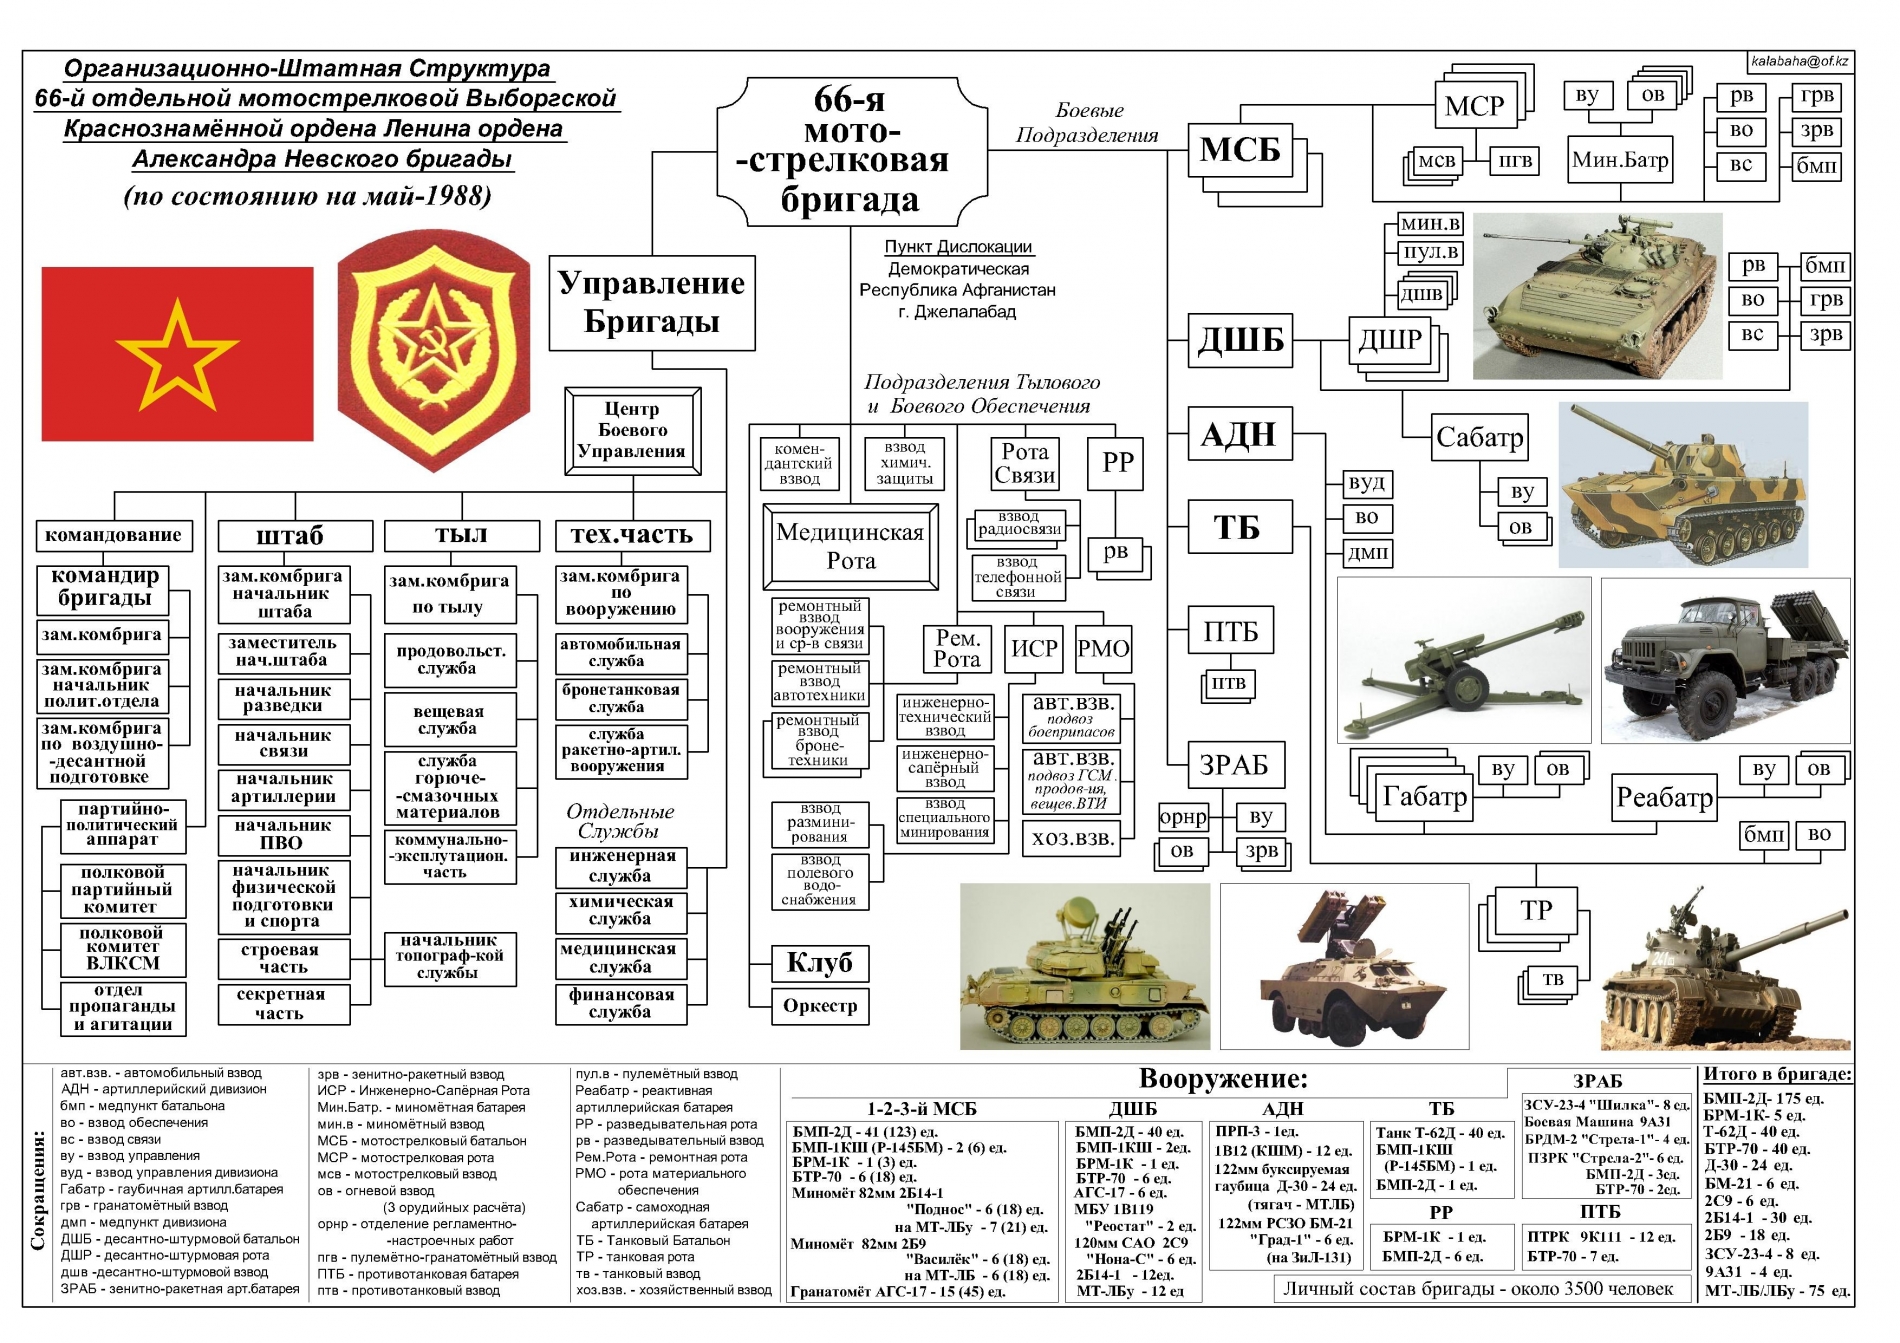 Организационно-штатная структура сухопутных войск РФ